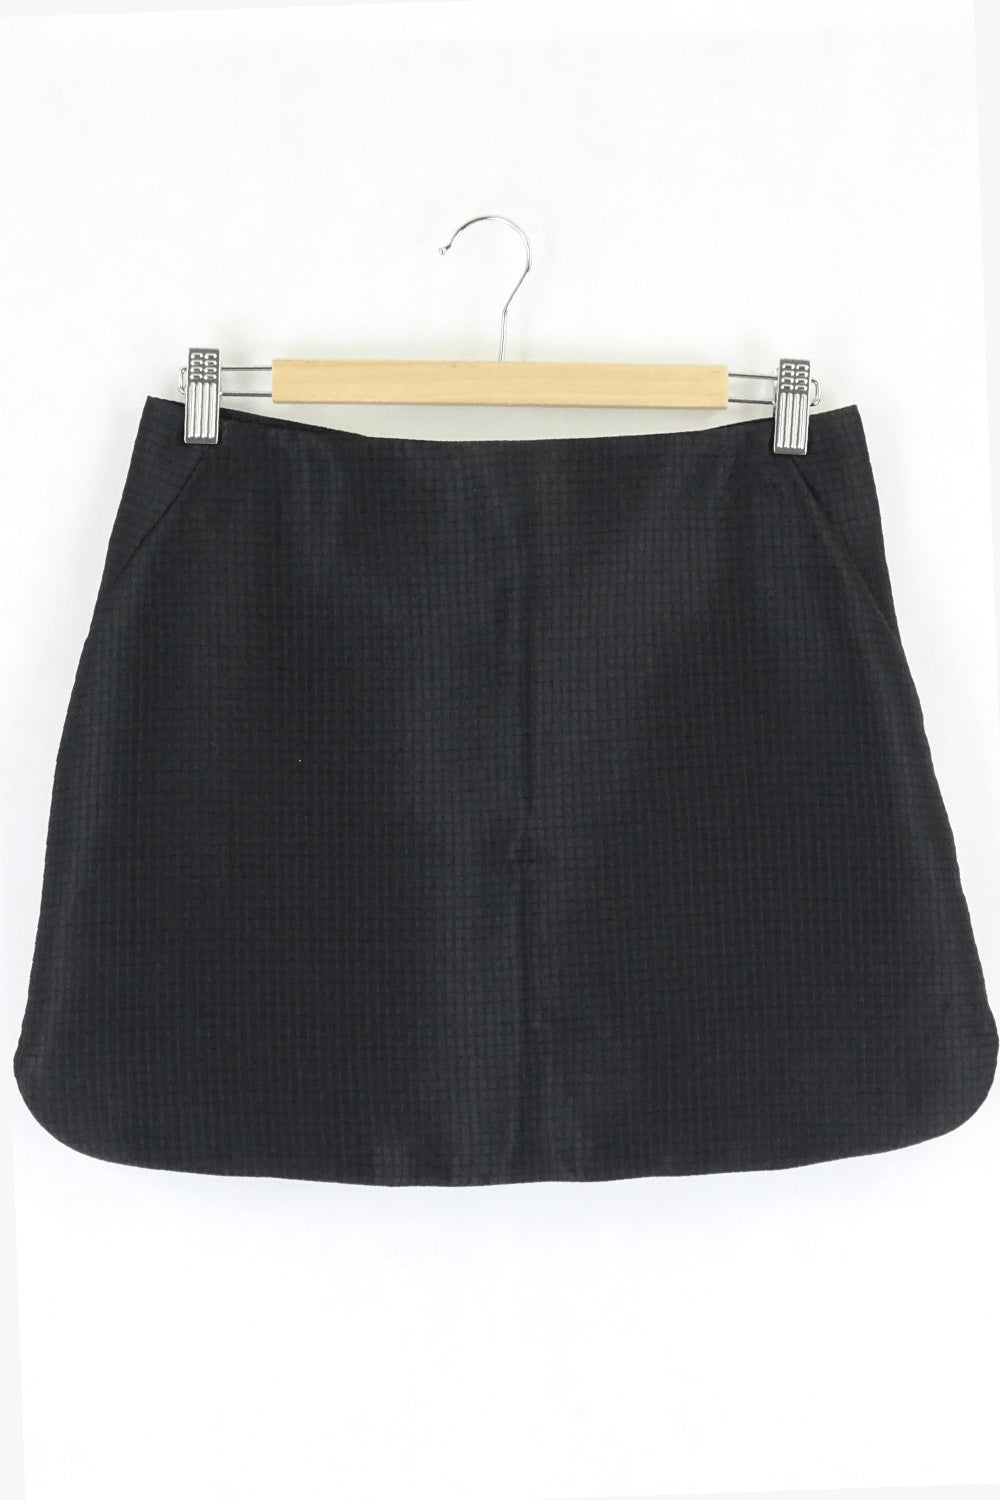 Lulu & Rose Textured Black Mini Skirt S